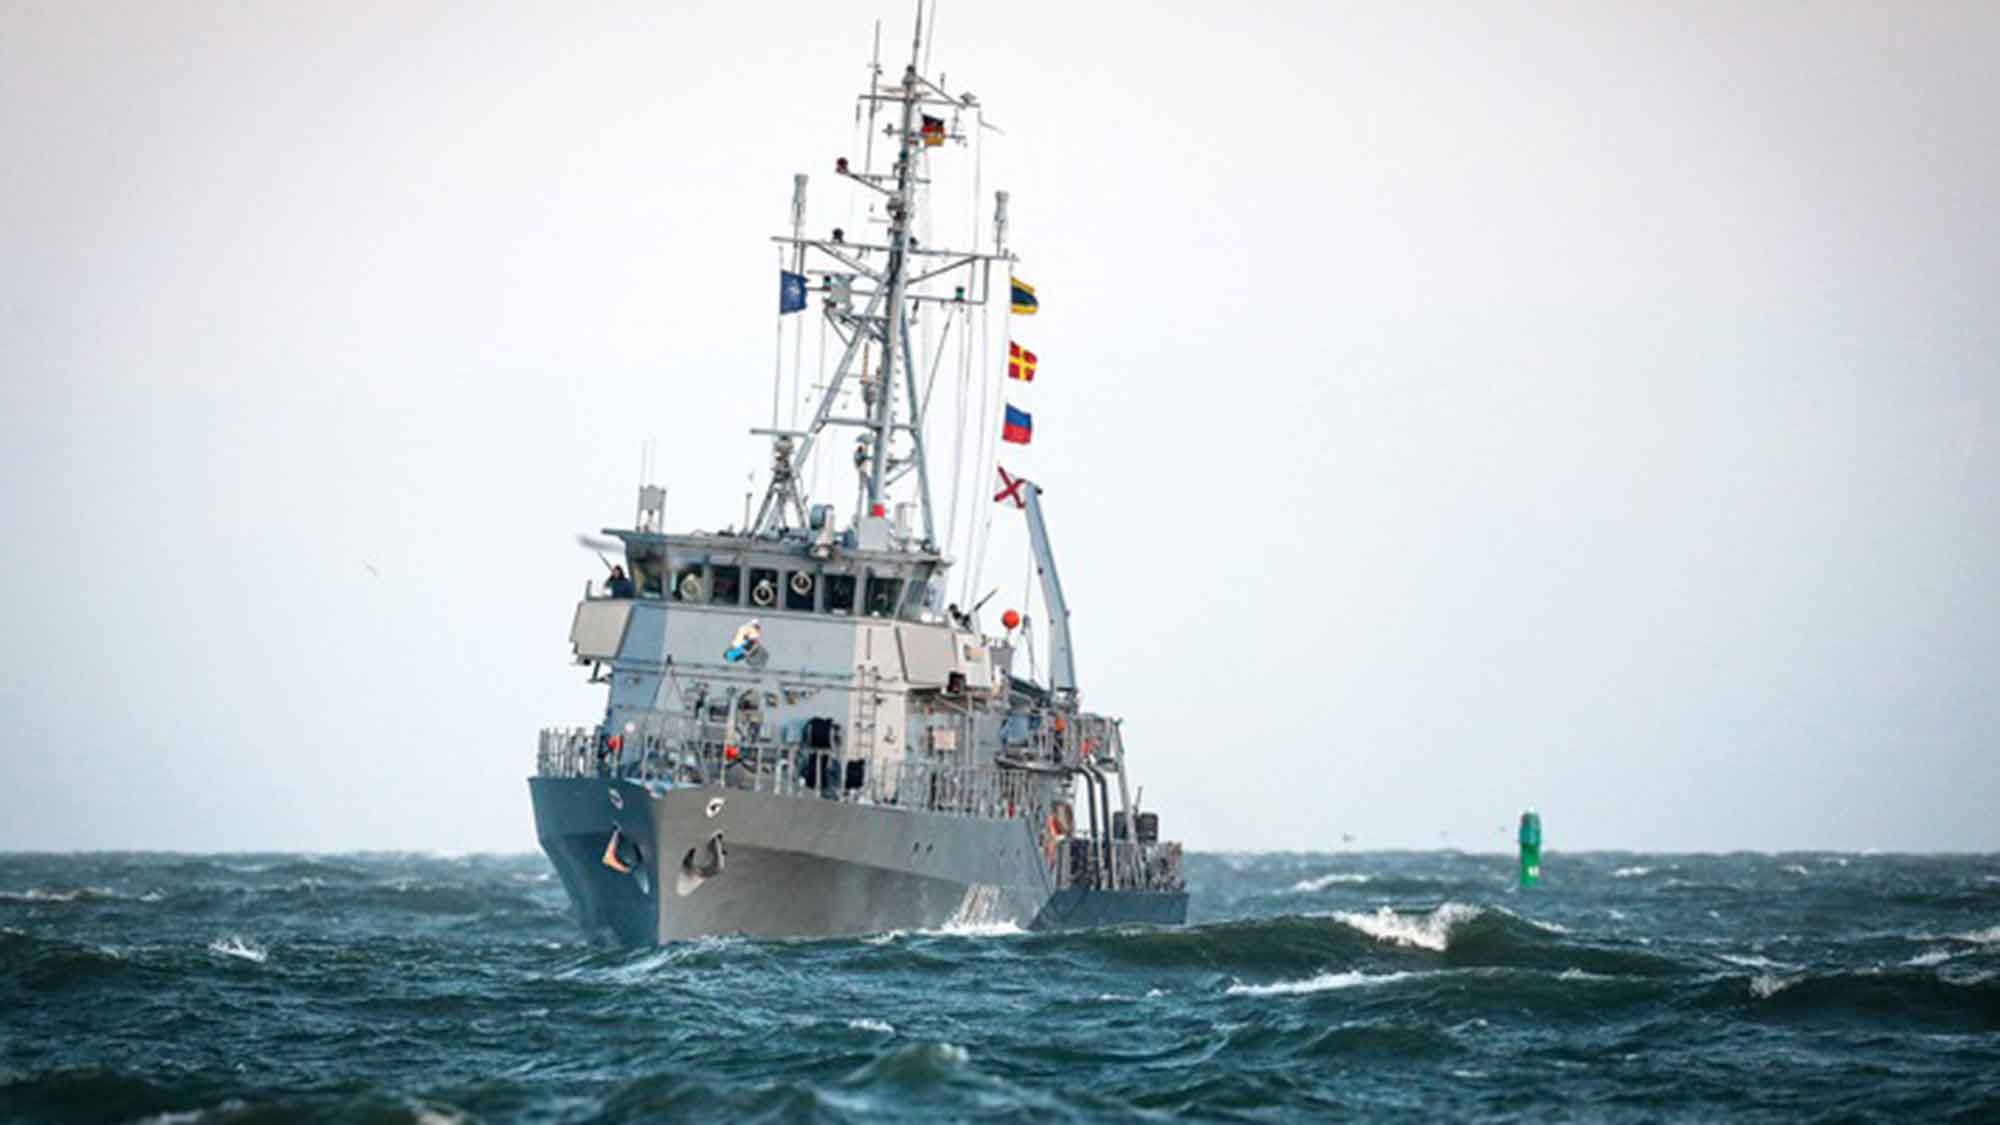 16 Häfen in 5 Monaten – Minenjagdboot »Bad Bevensen« nach NATO Einsatz wieder zuhause